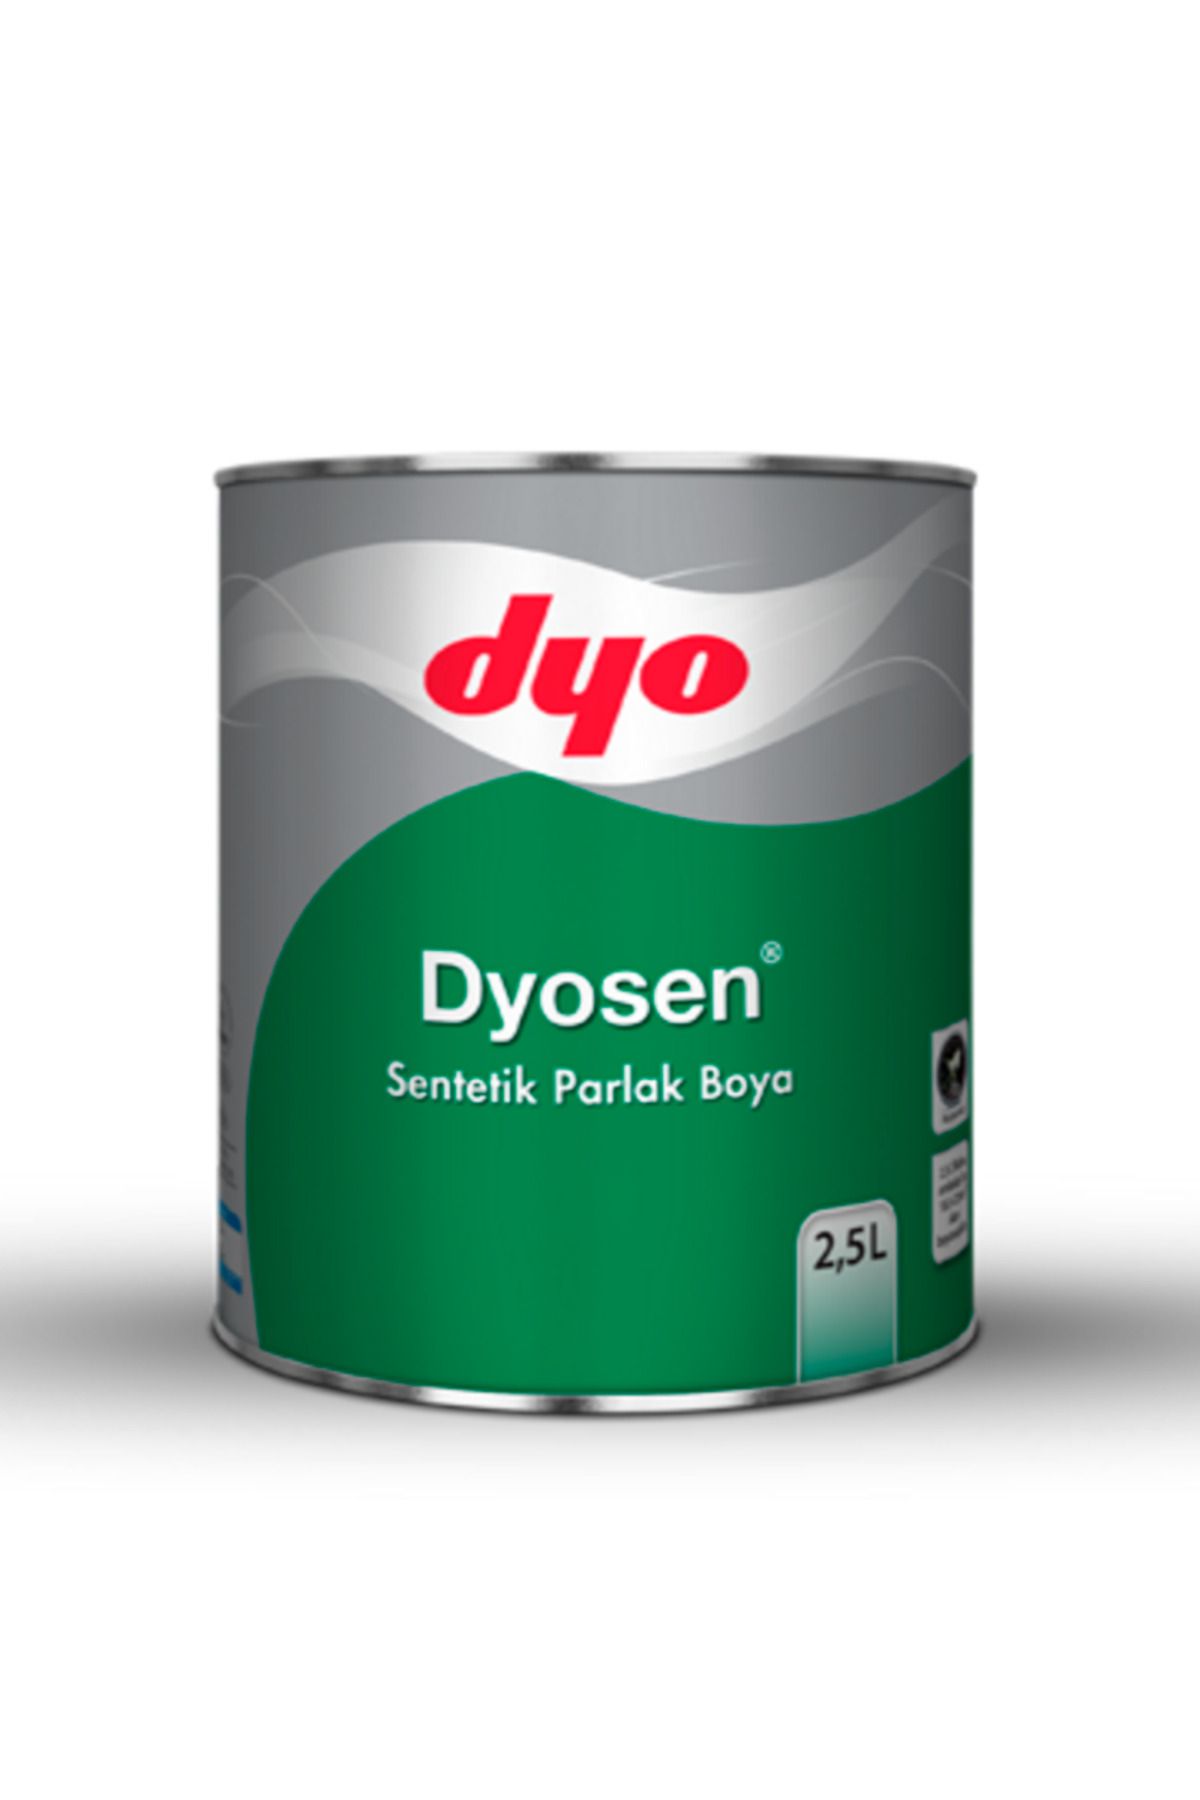 Dyo Dyosen Sentetik Parlak Boya 2,5lt ( Renk Seçiniz ) TopalakBoyaHırdavat